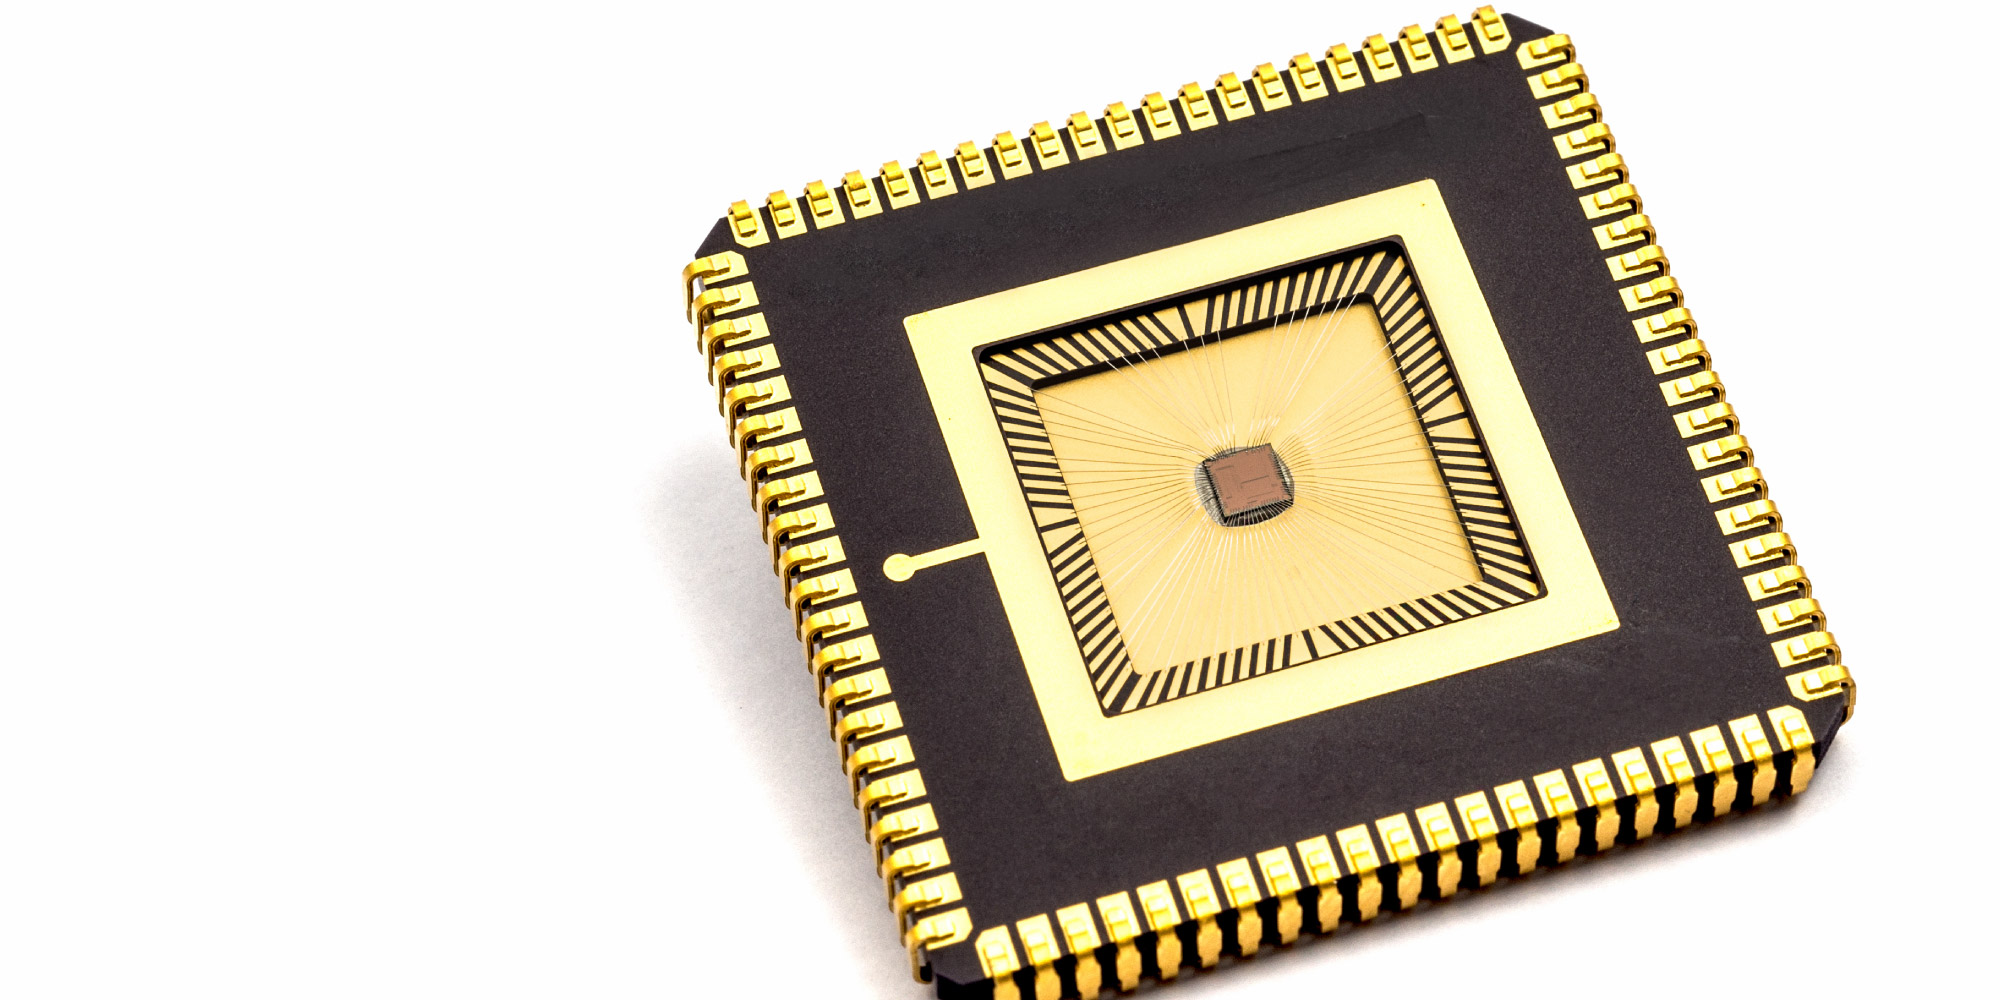 imec-multi-sensor-chip-3.jpg